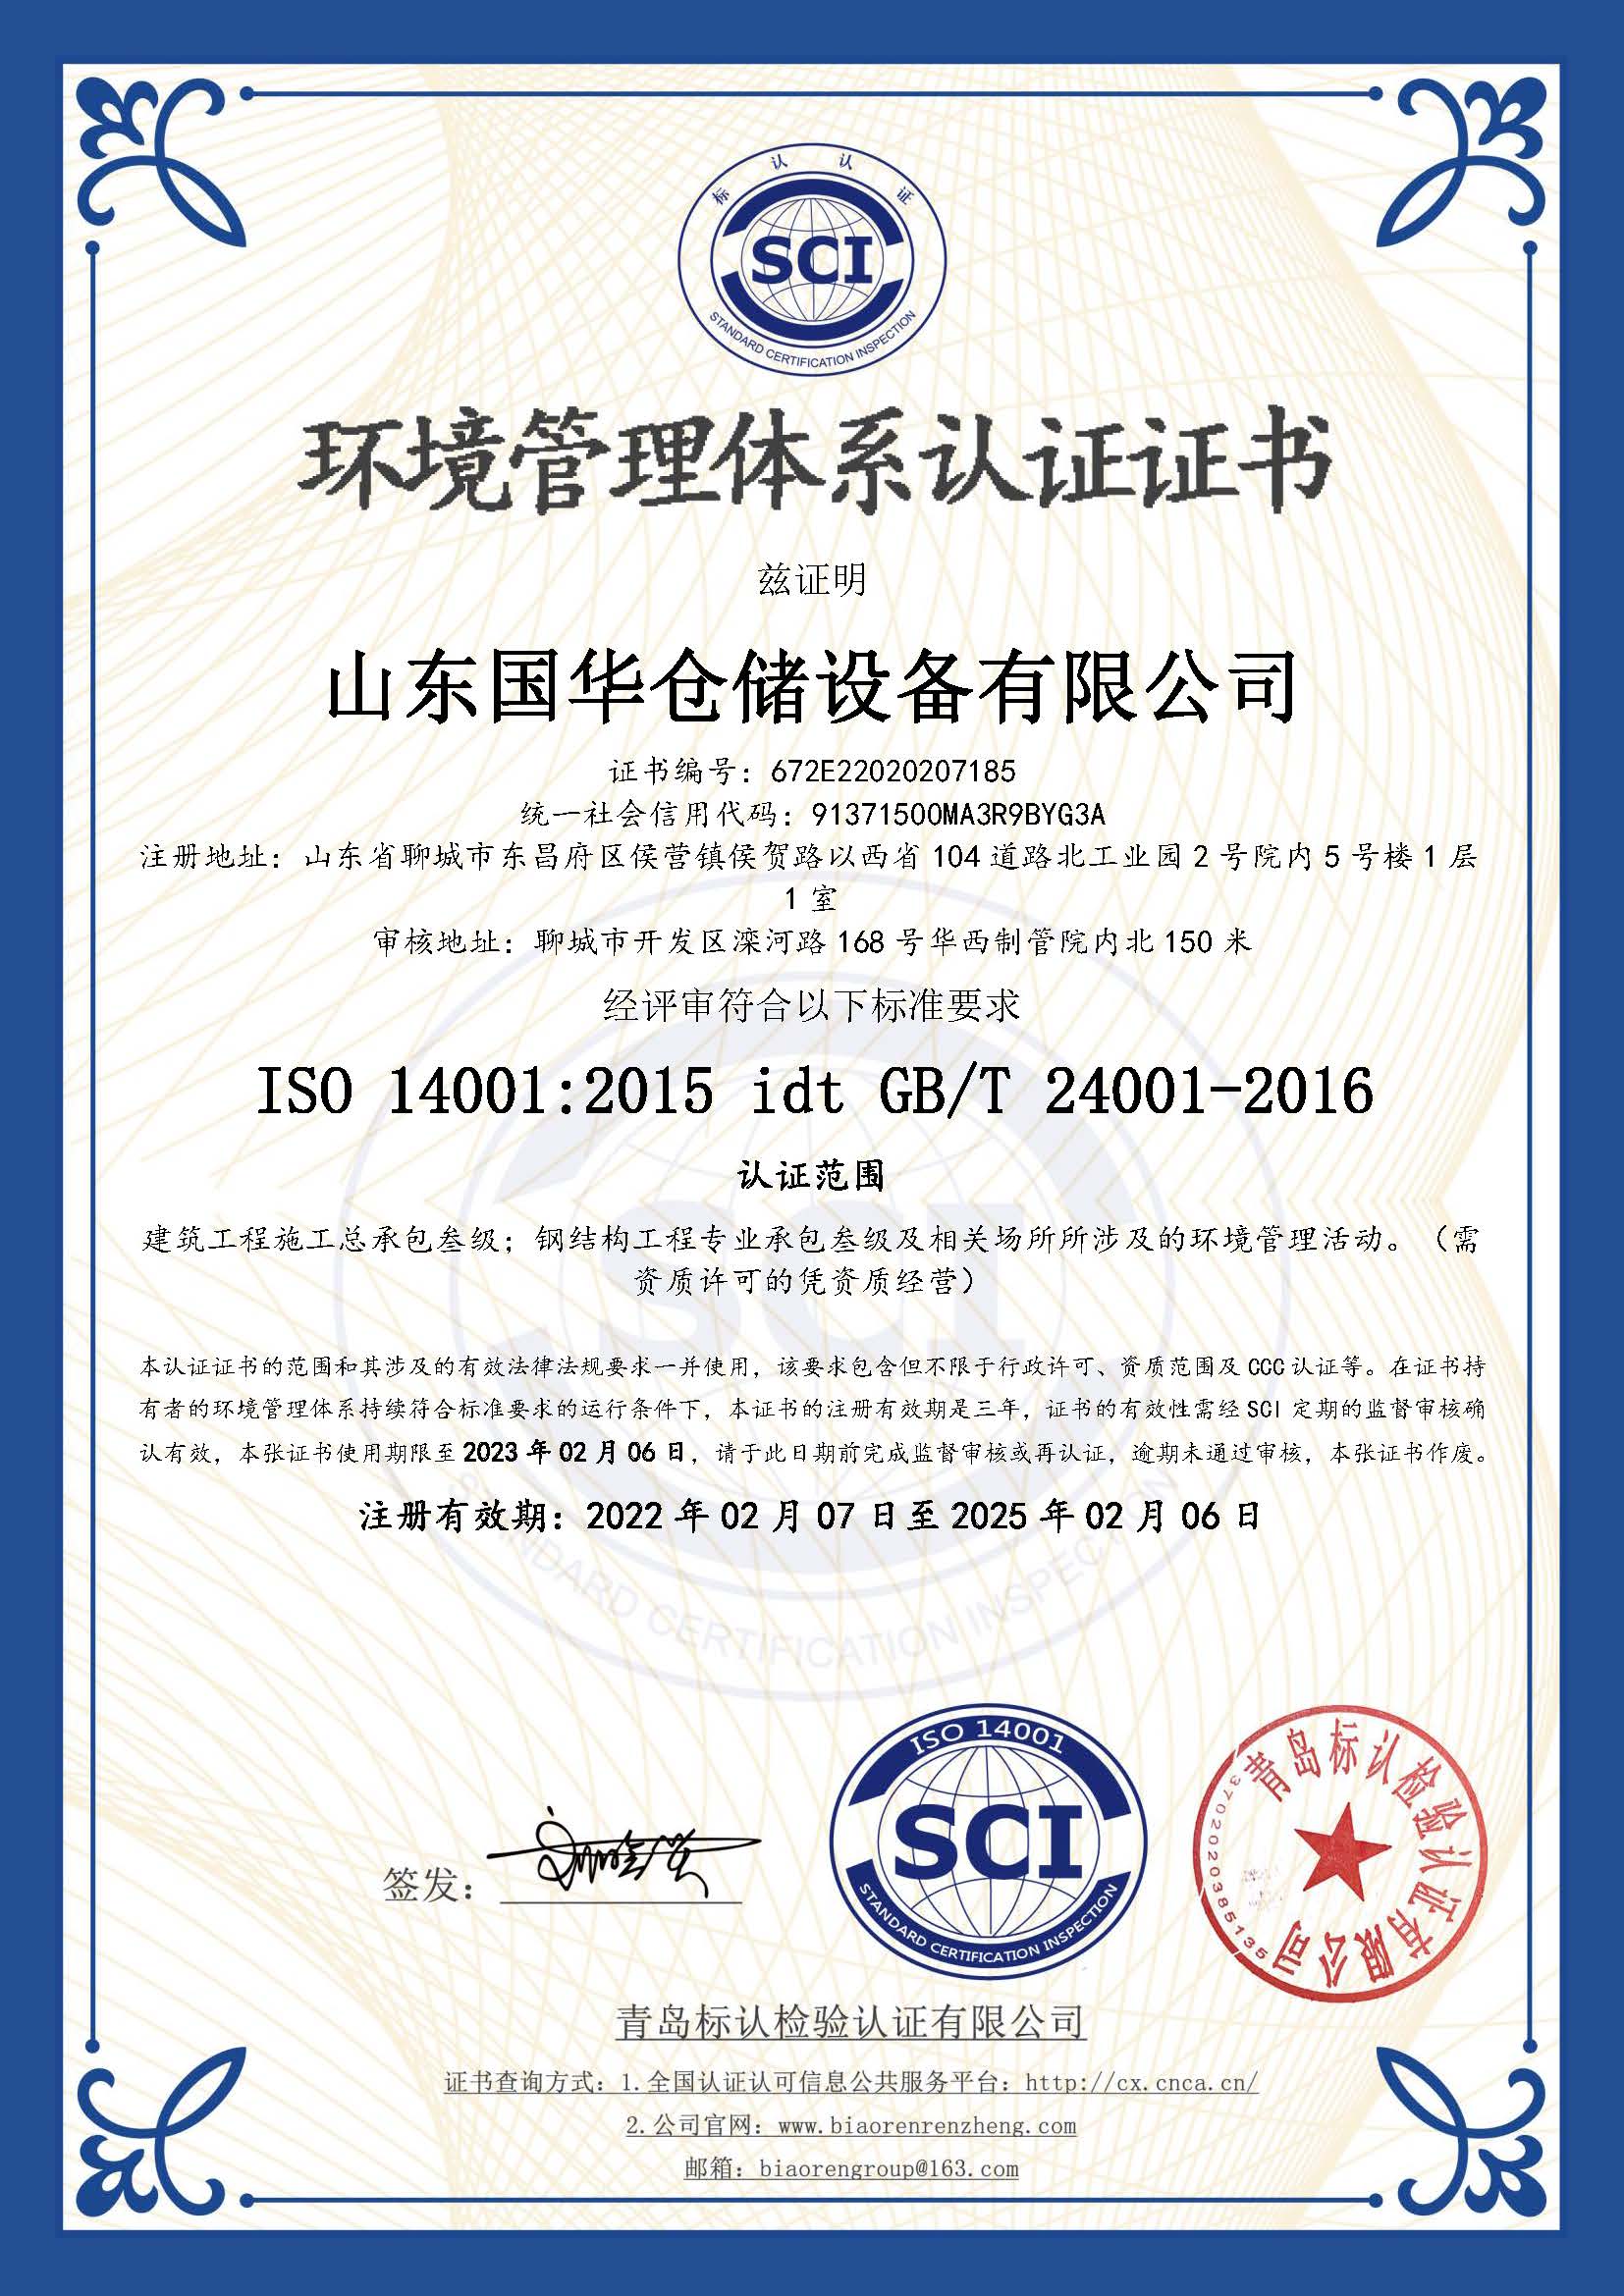 兴安钢板仓环境管理体系认证证书